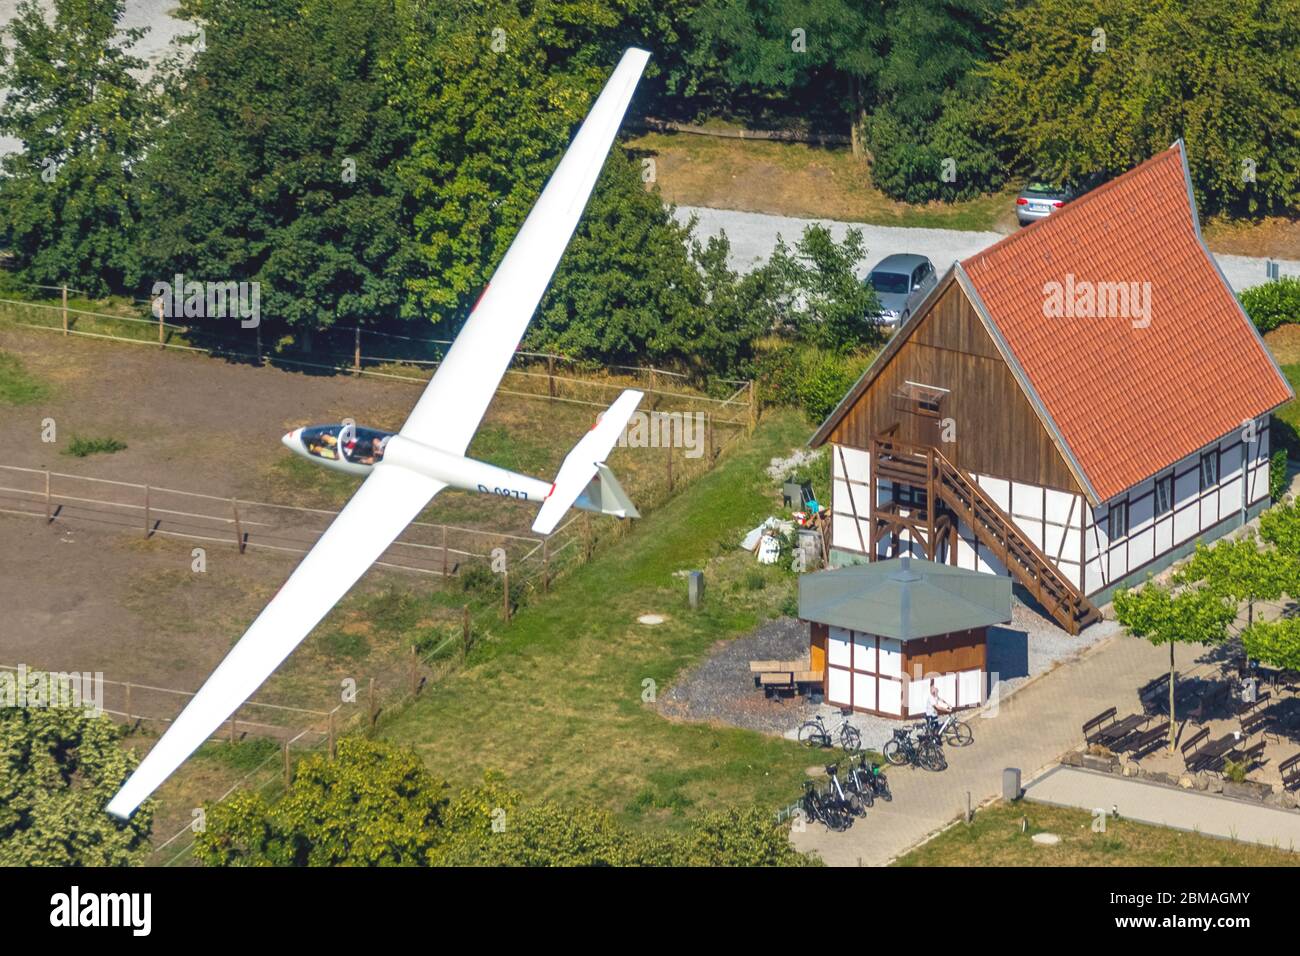 Segelflugzeug ASK21 im Flug über Restaurant Restaurant Altes Fährhaus, Landestraining, 04.08.2019, Luftbild, Deutschland, Nordrhein-Westfalen, Ruhrgebiet, Hamm Stockfoto